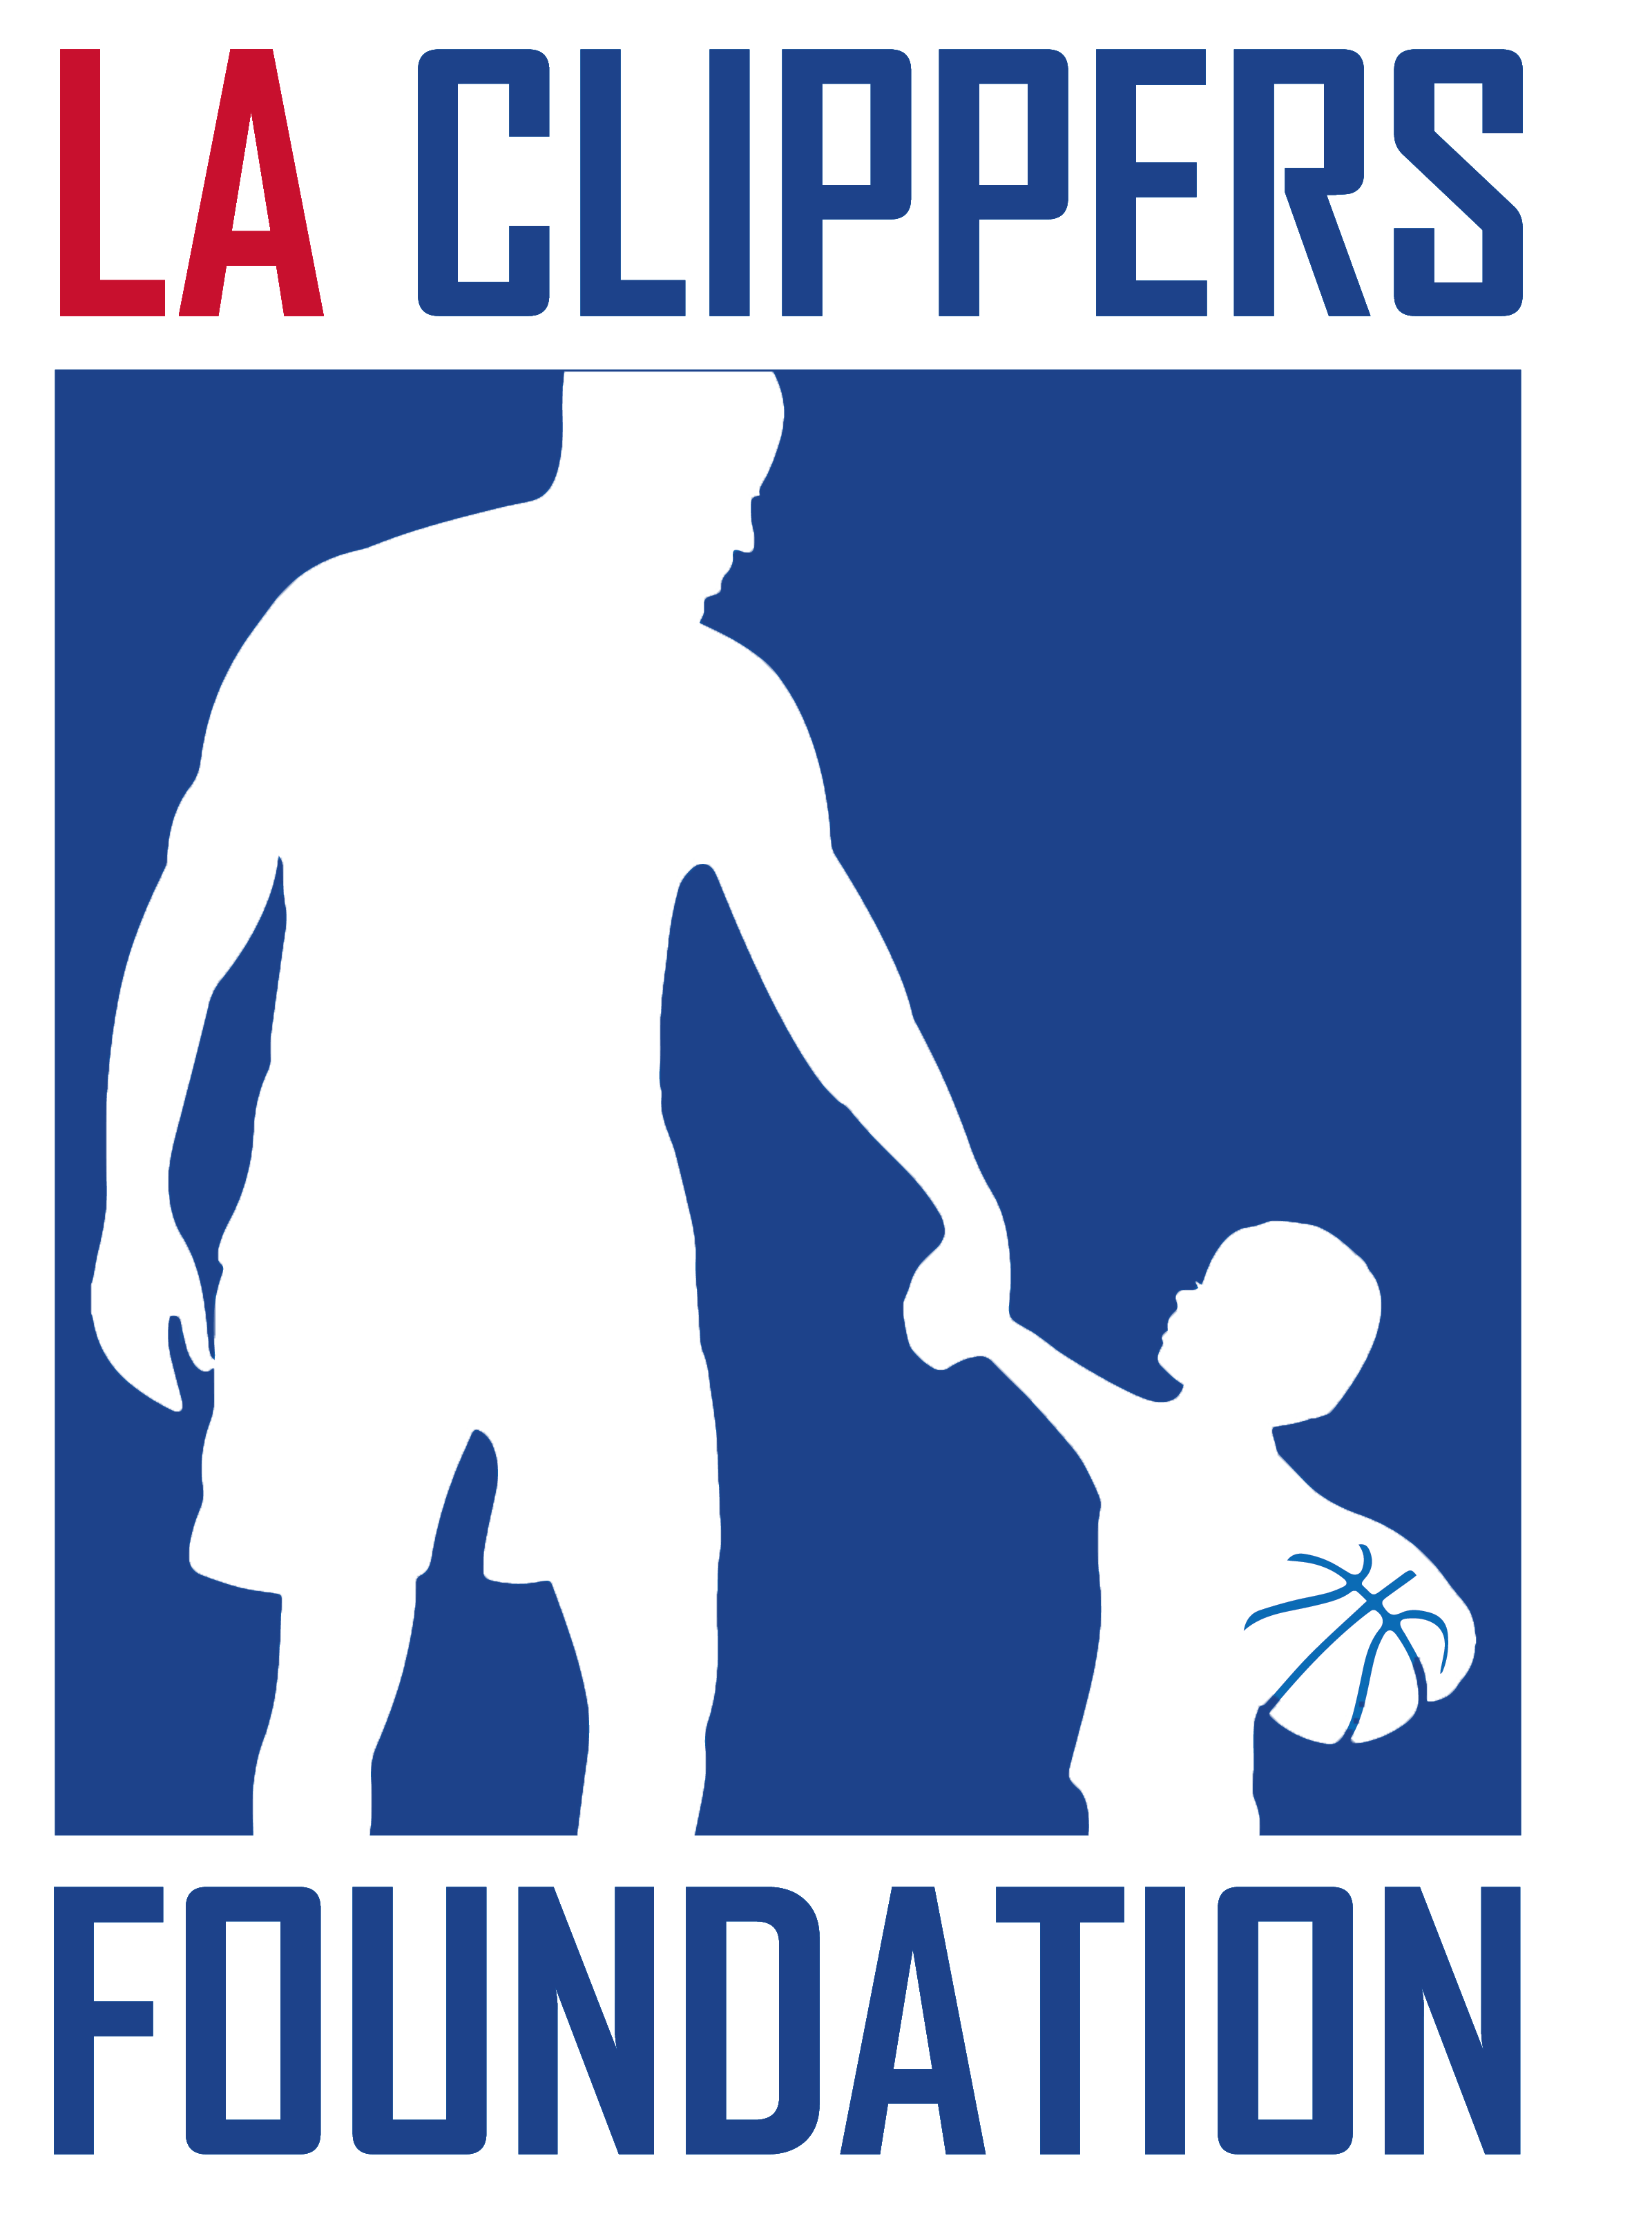 LA Clippers Foundation